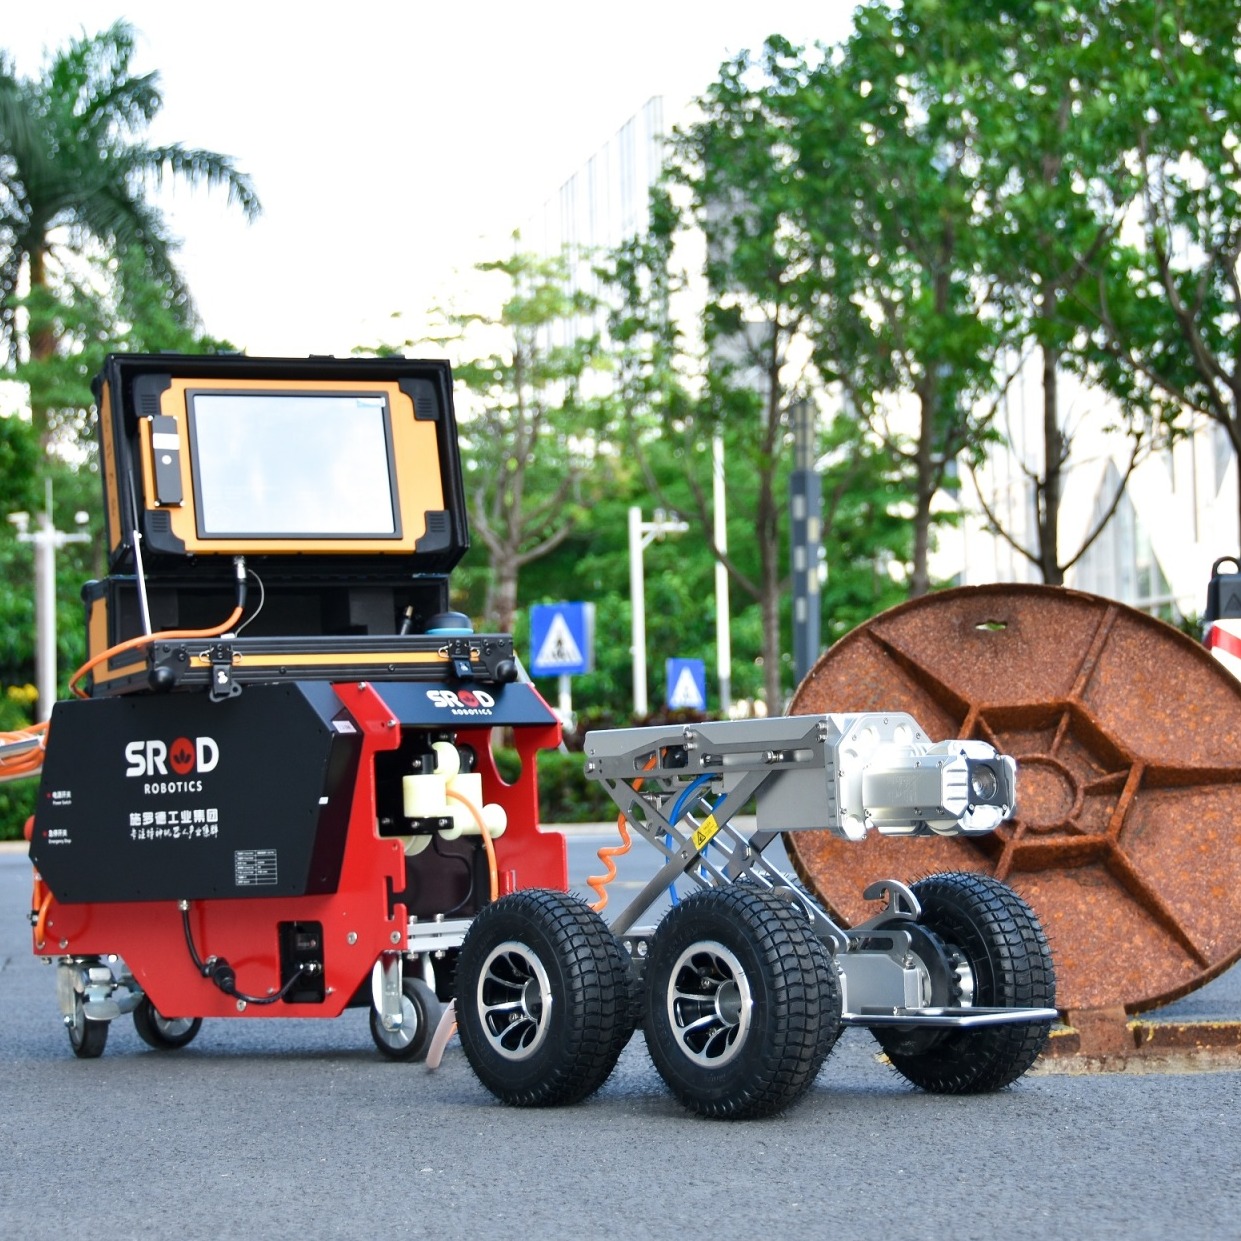 市政高清管道机器人SINGA300E厂家供应 施罗德